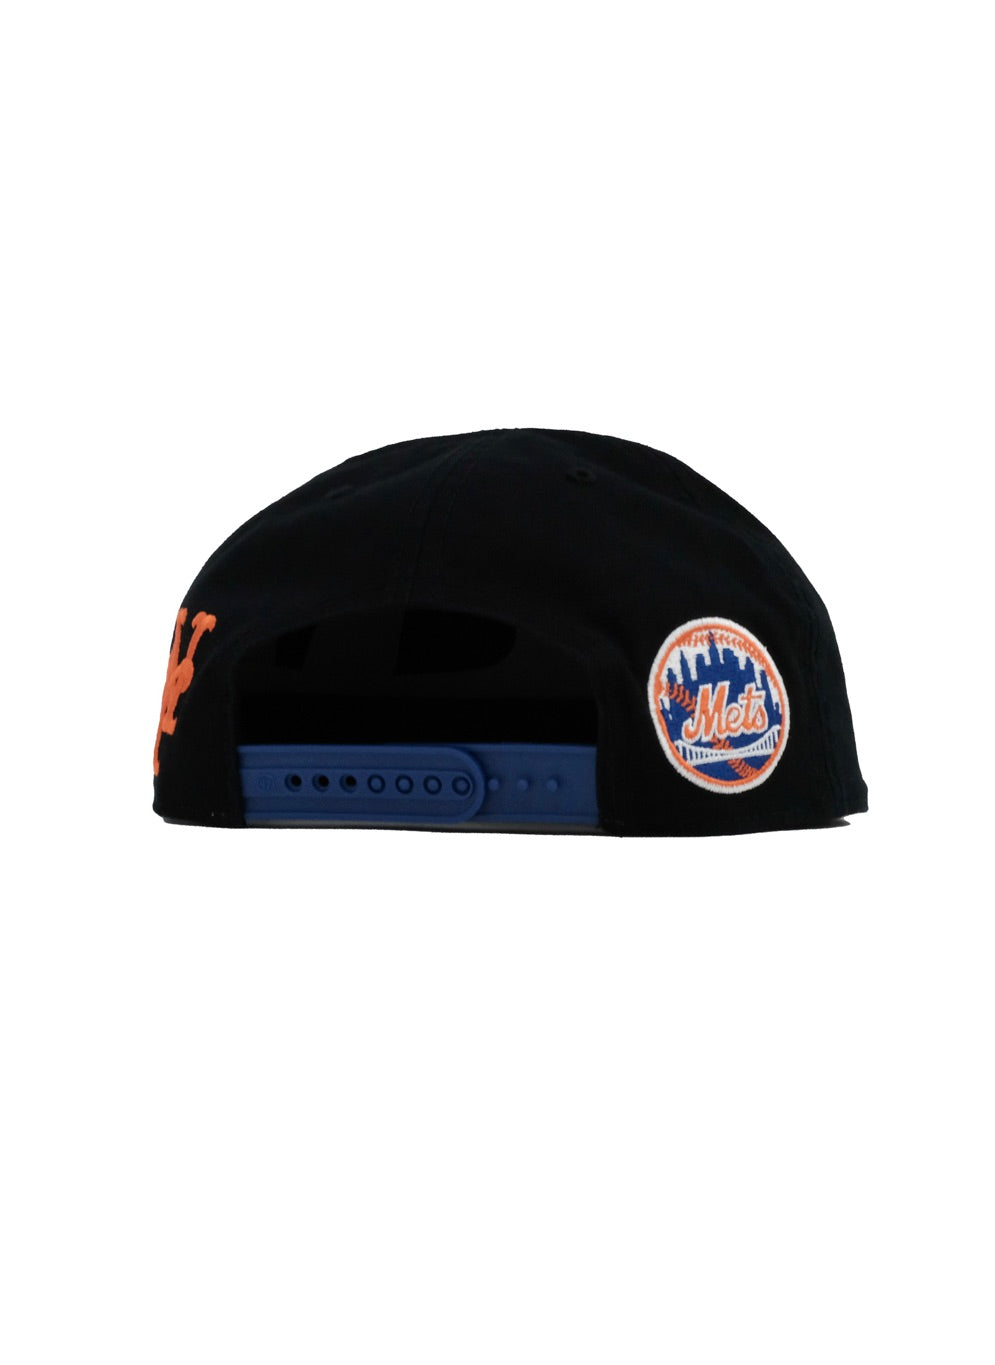 NY Mets / 47 Mets Double Backer ‘47 CAPTAIN RF Black